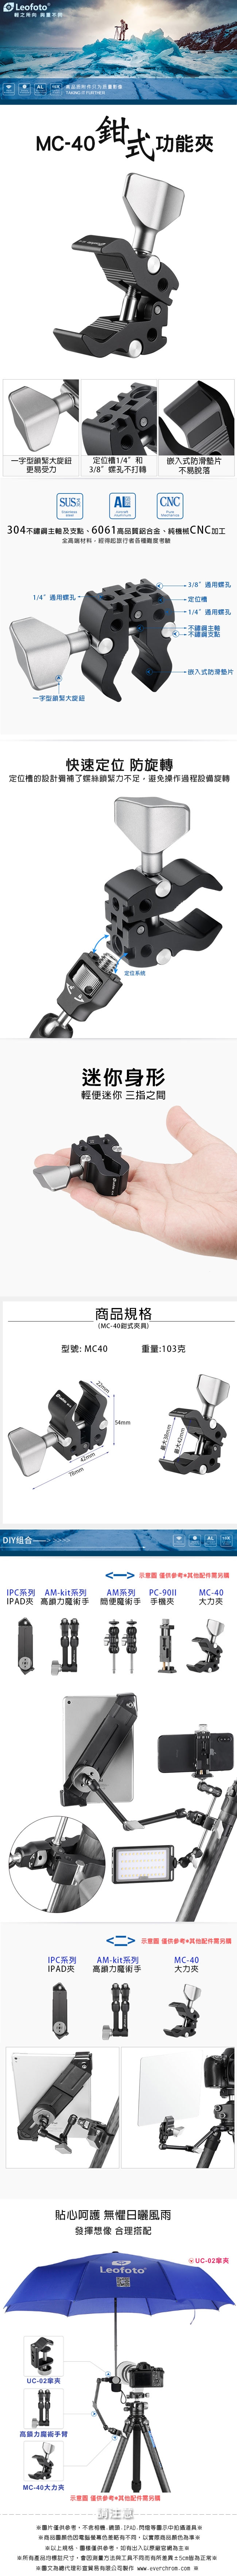 Leofoto 徠圖 MC-40 攝影鉗式固定夾具